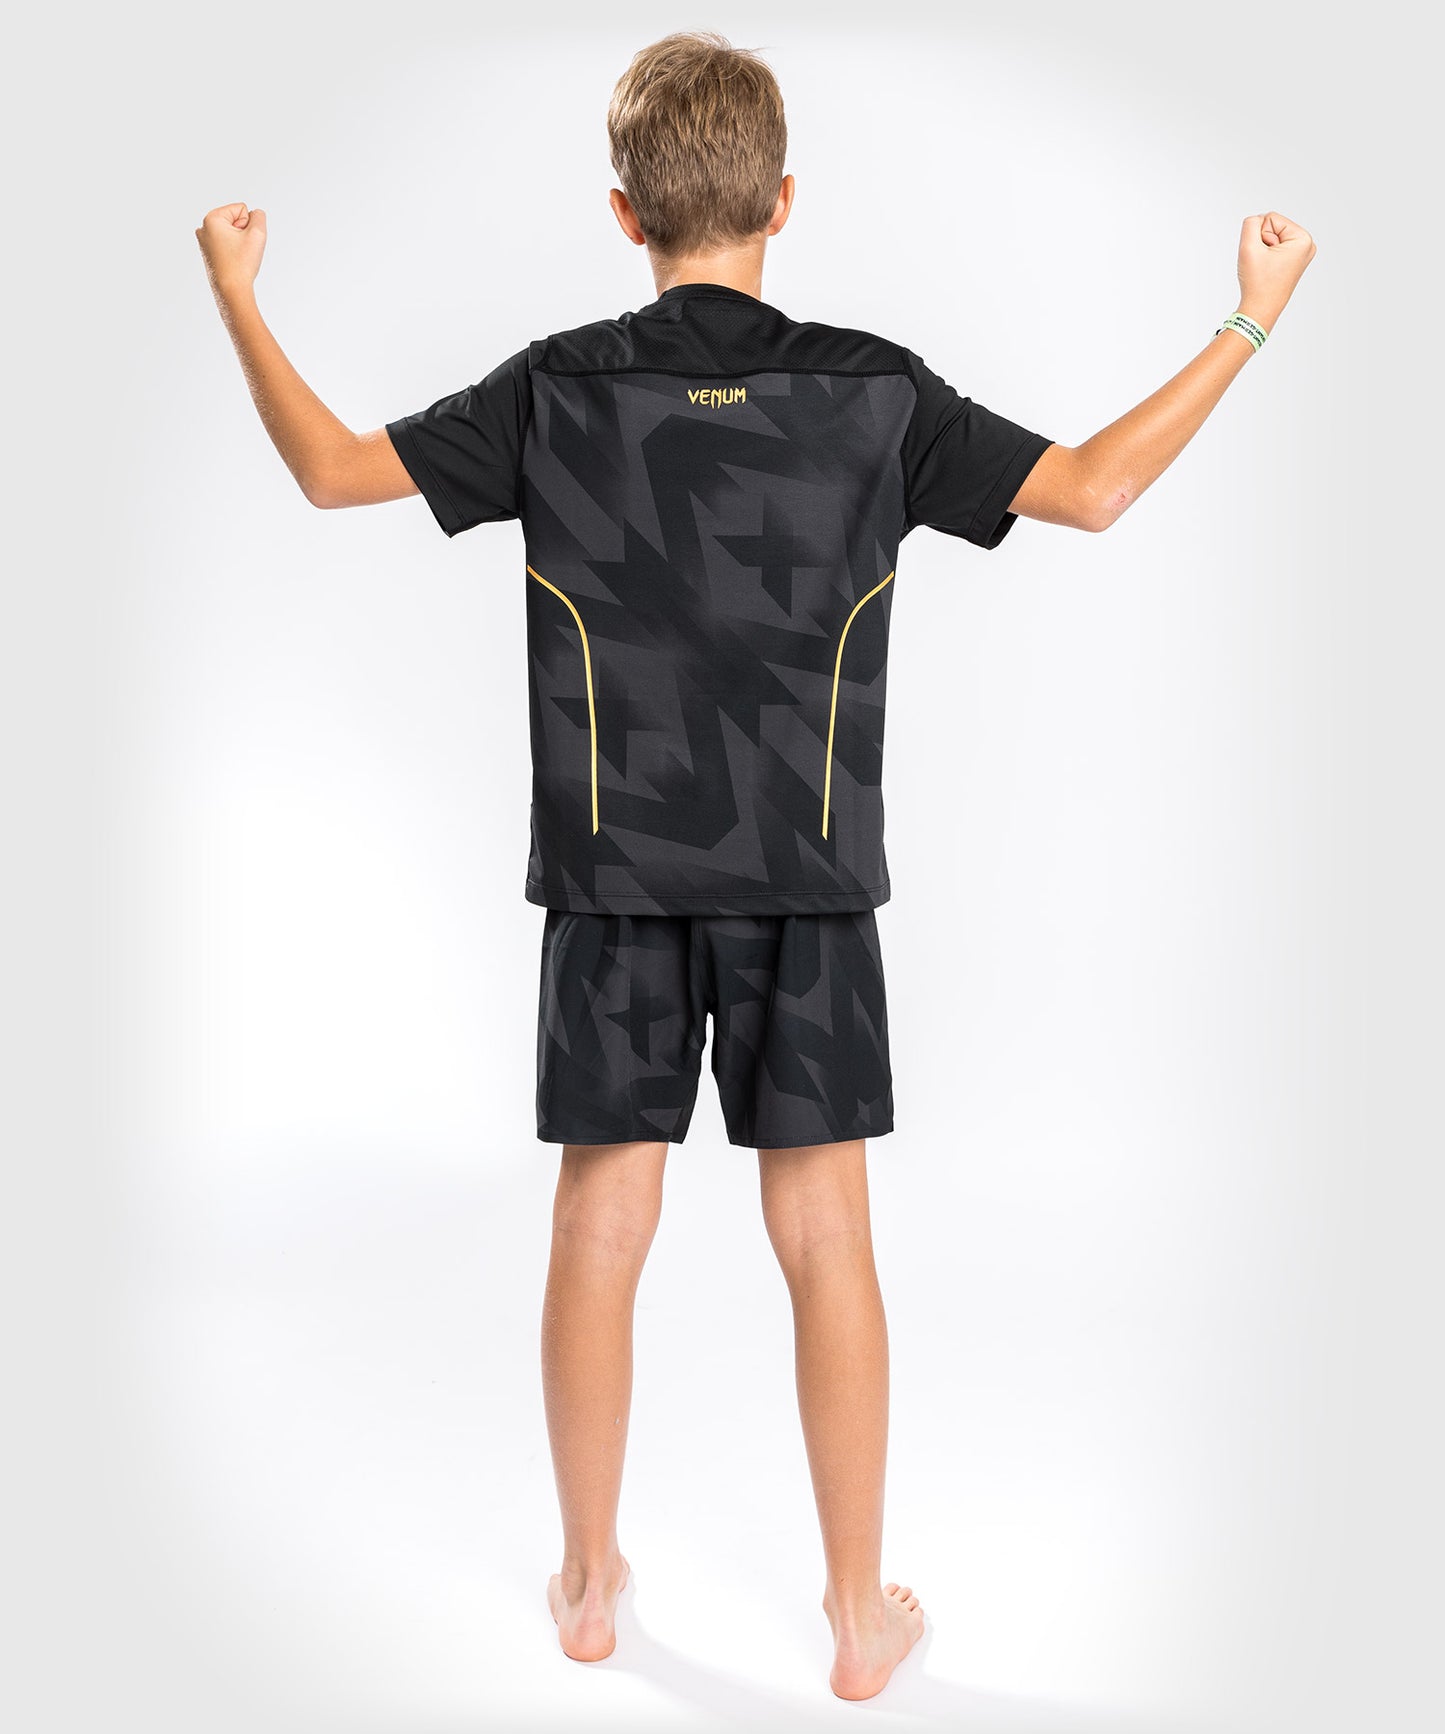 T-Shirt Dry Tech Venum Razor - Pour Enfants - Noir/Or